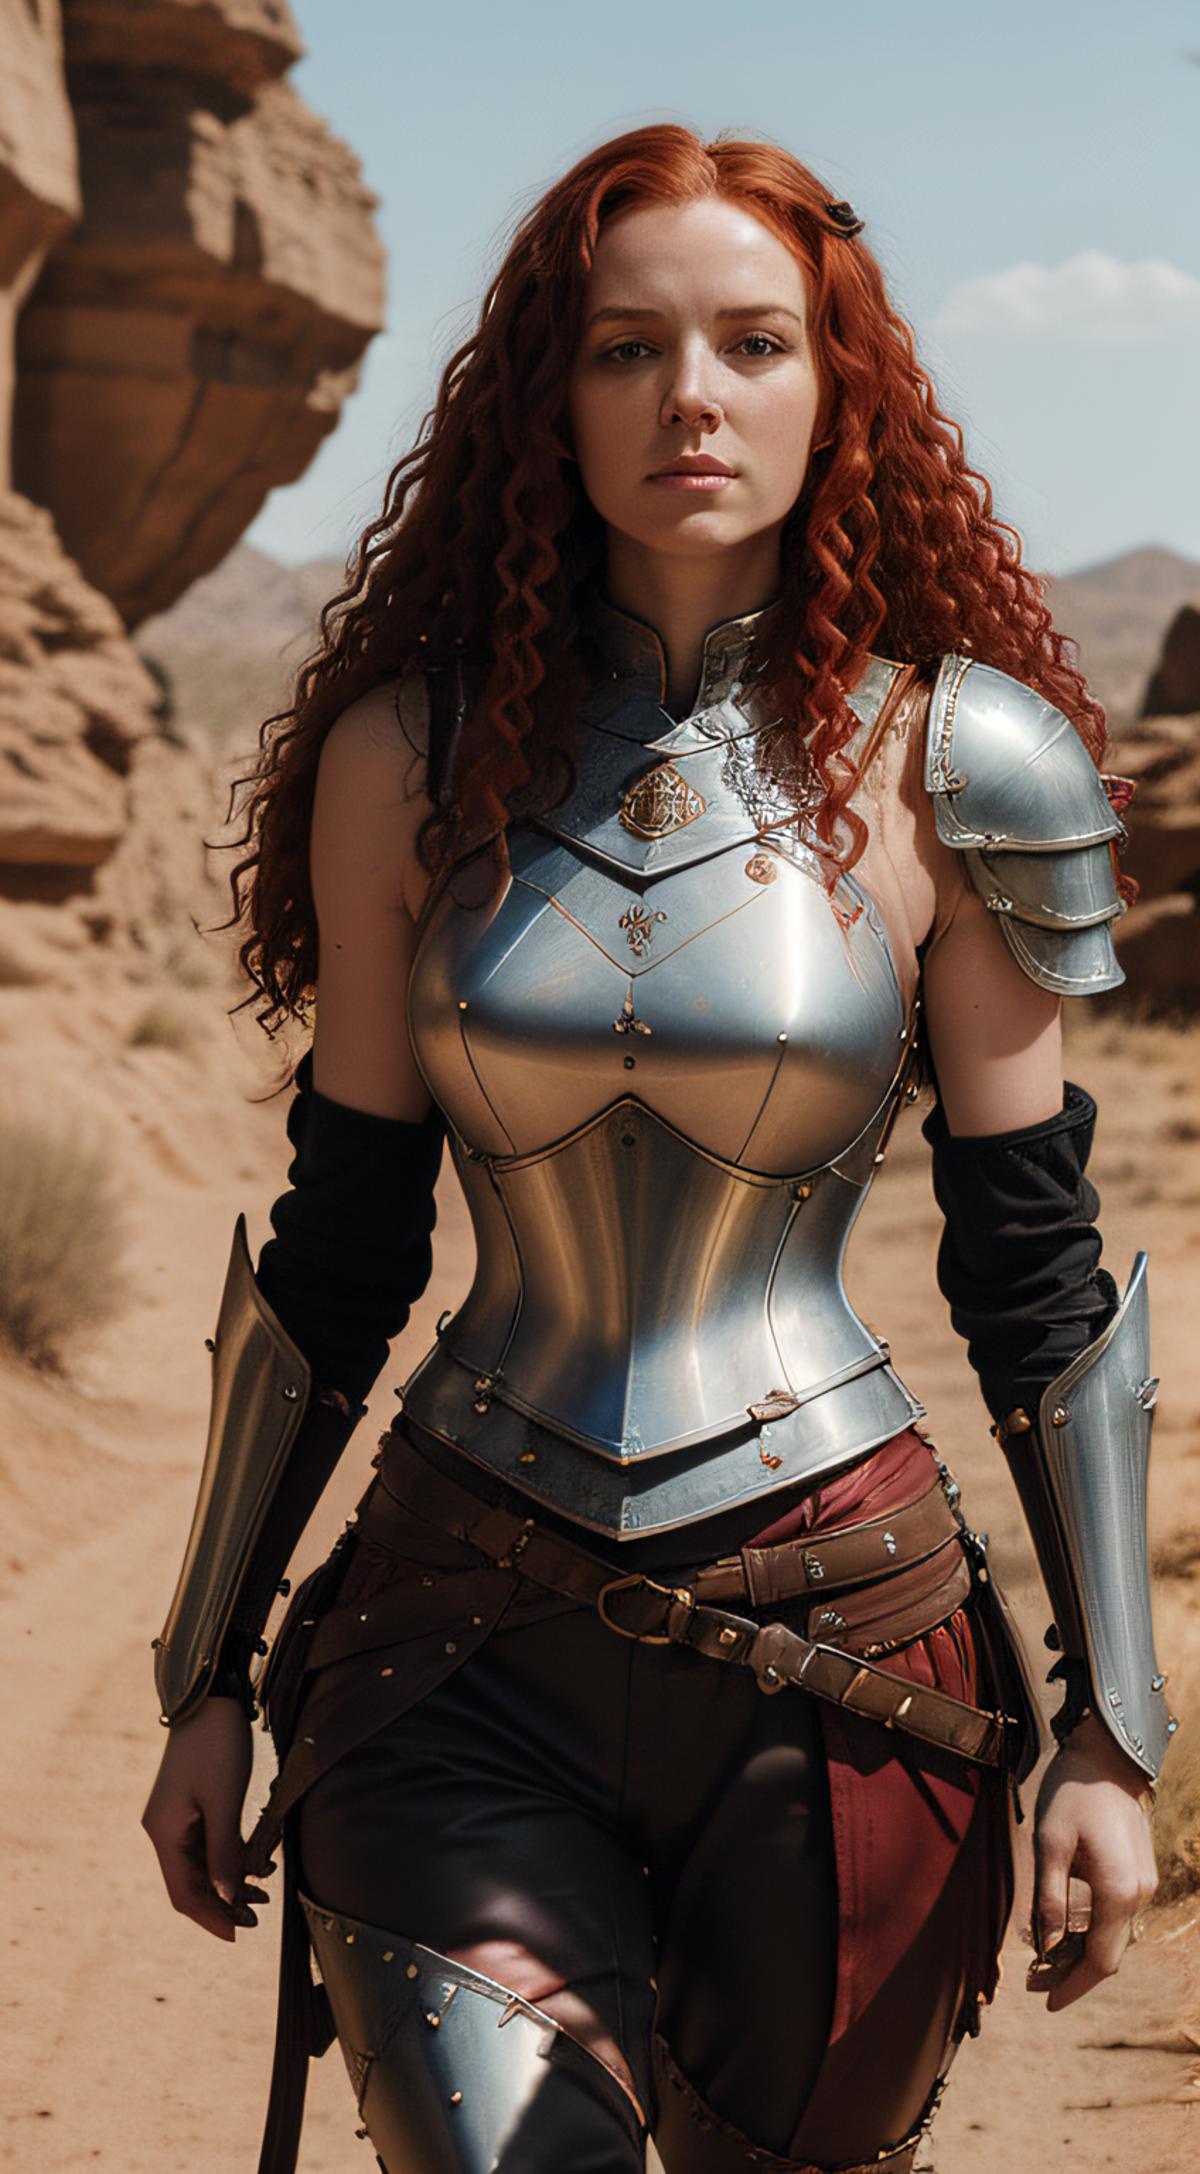 Ladies Armor image by markplunder